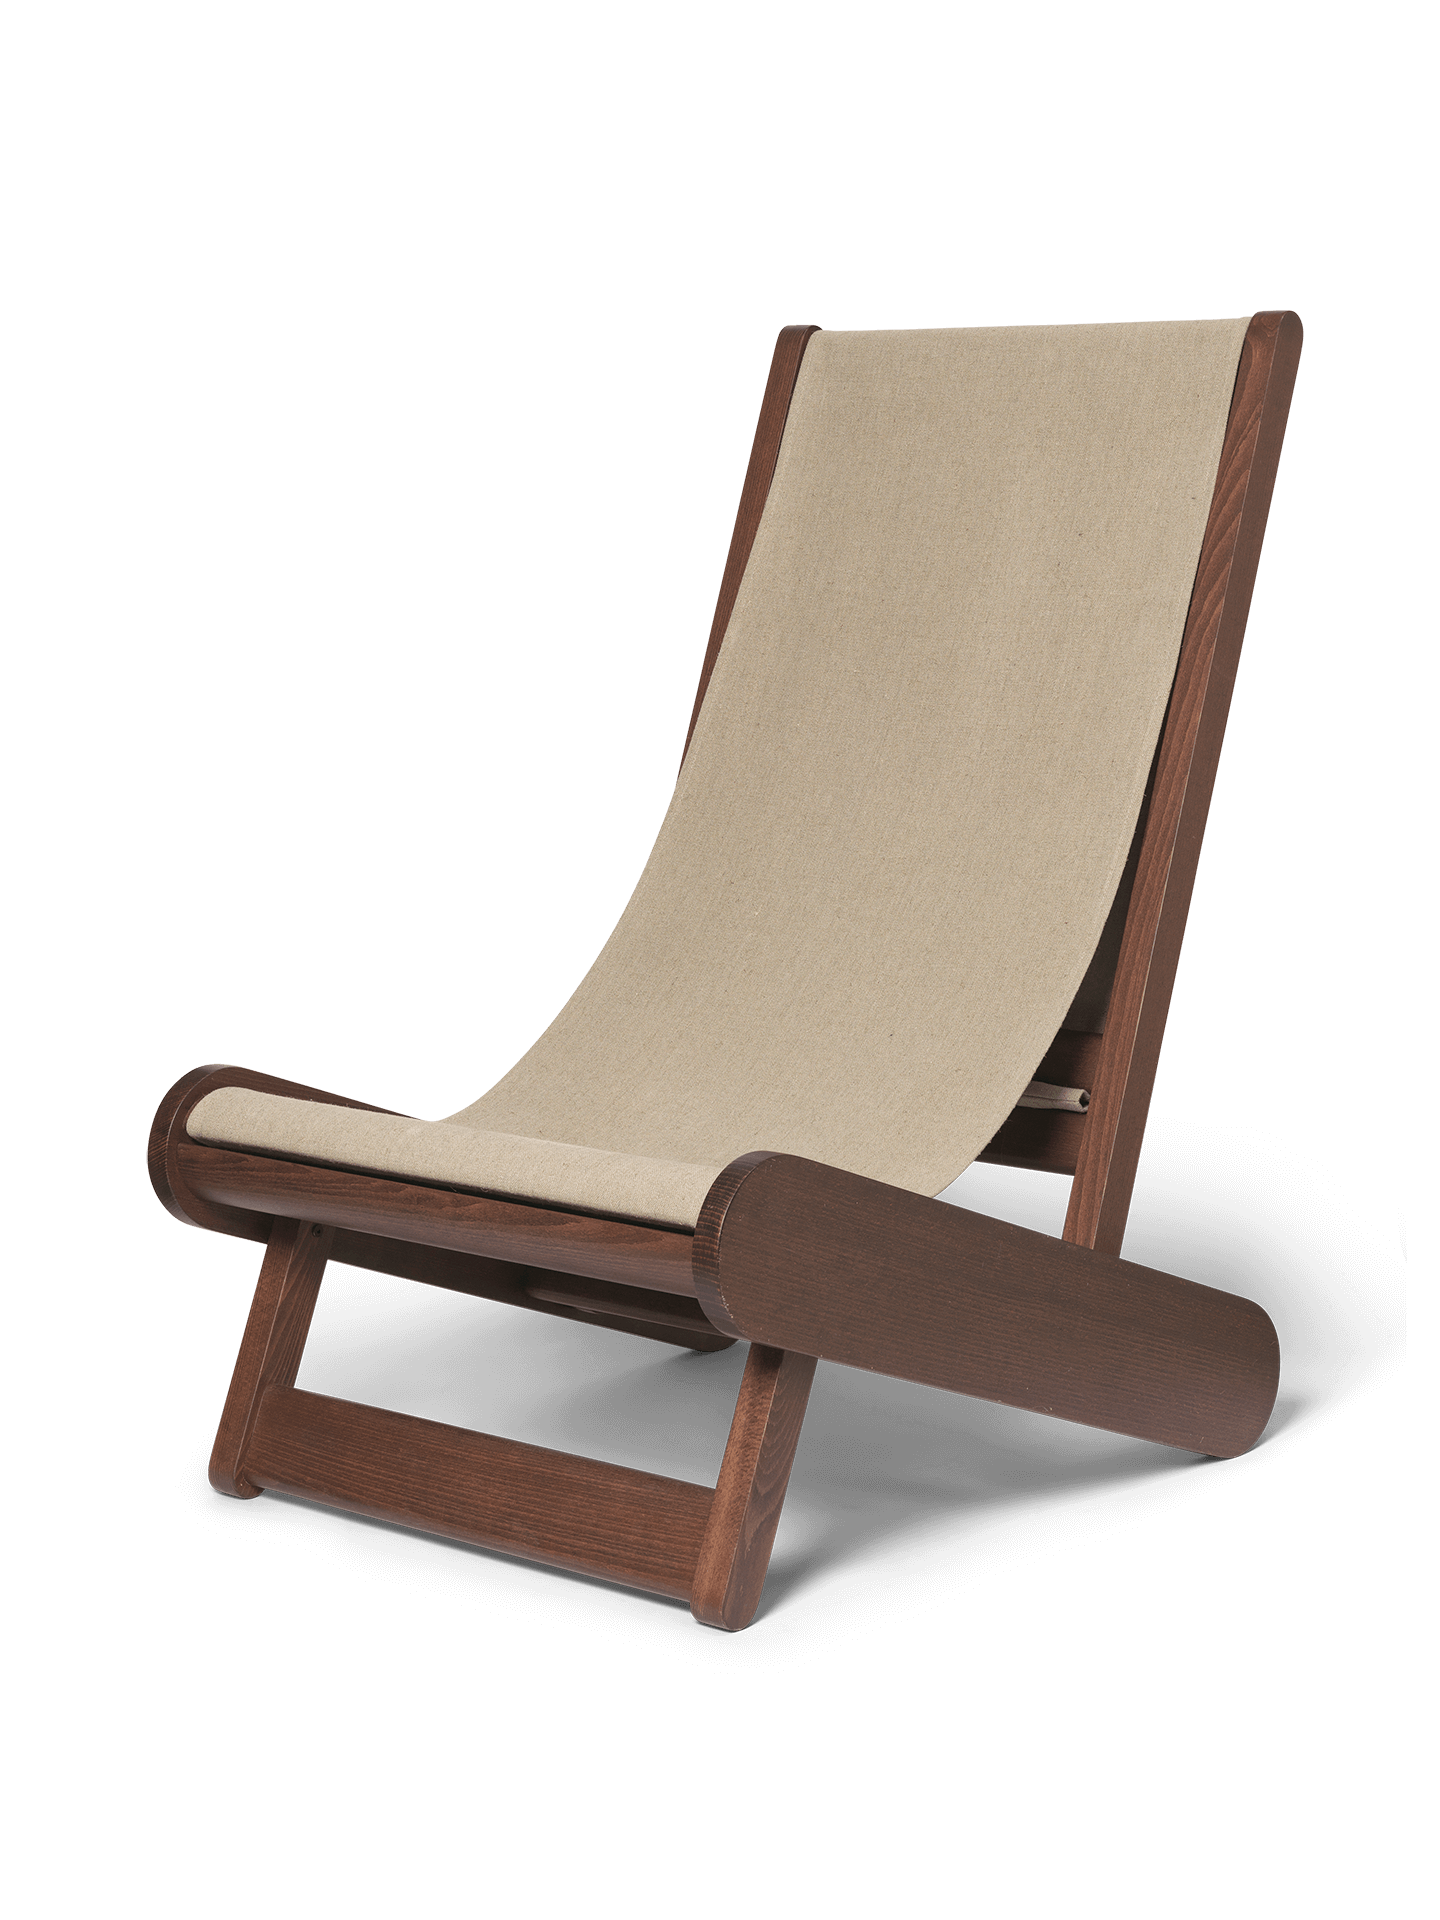 Lenestol Hemi Lounge Chair fra ferm living